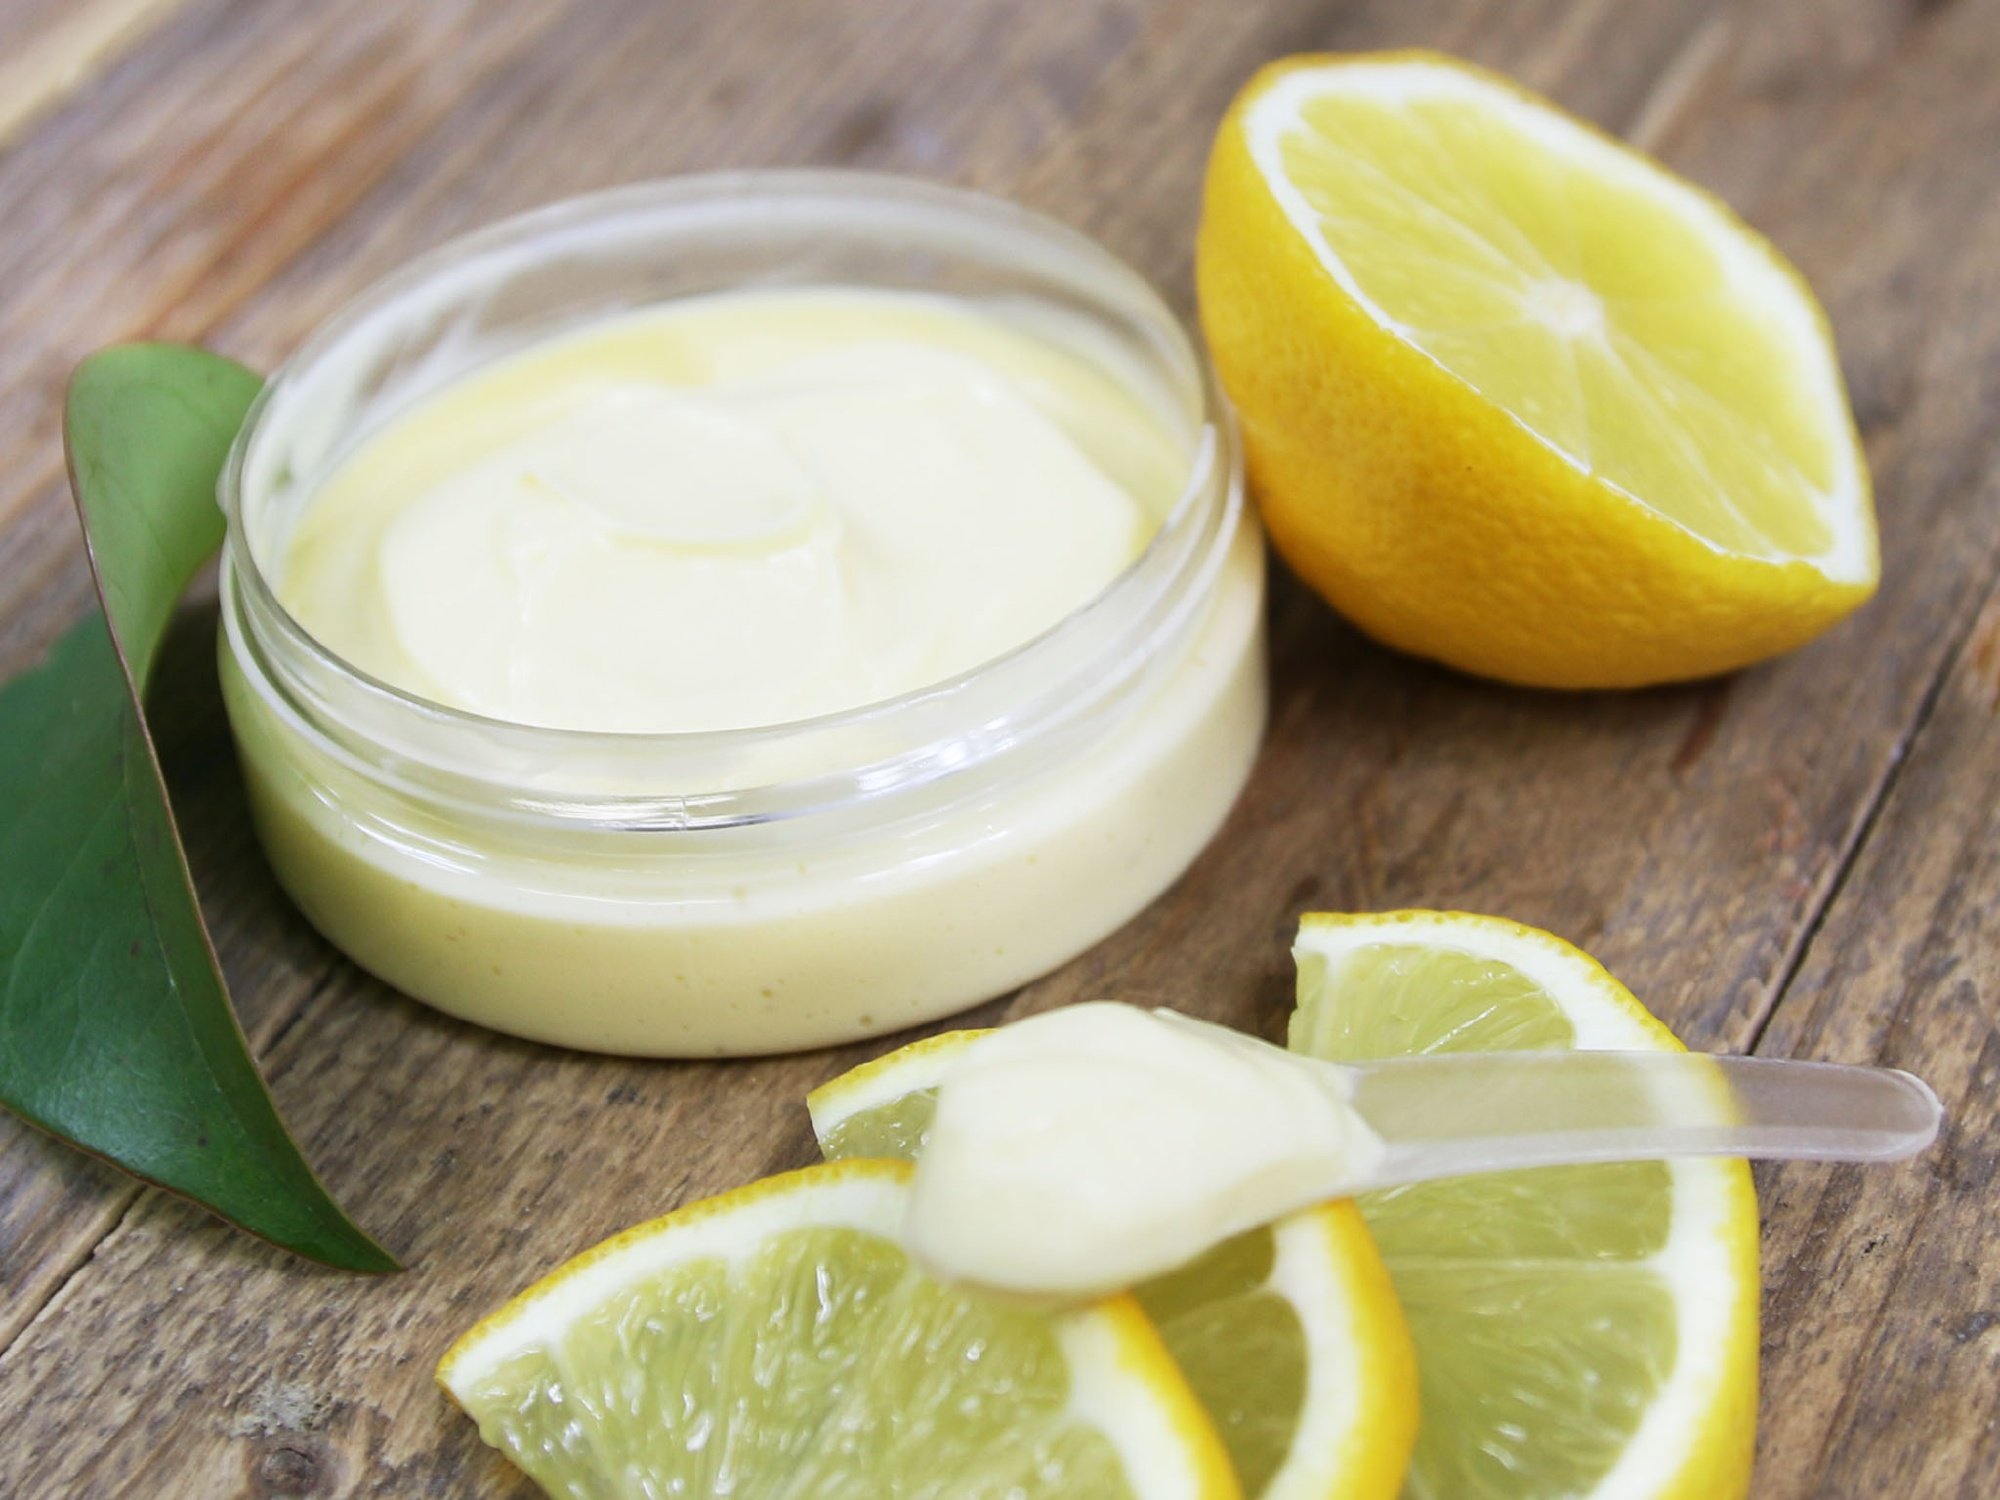 Crema mani al limone con proprietà schiarenti e antimacchia